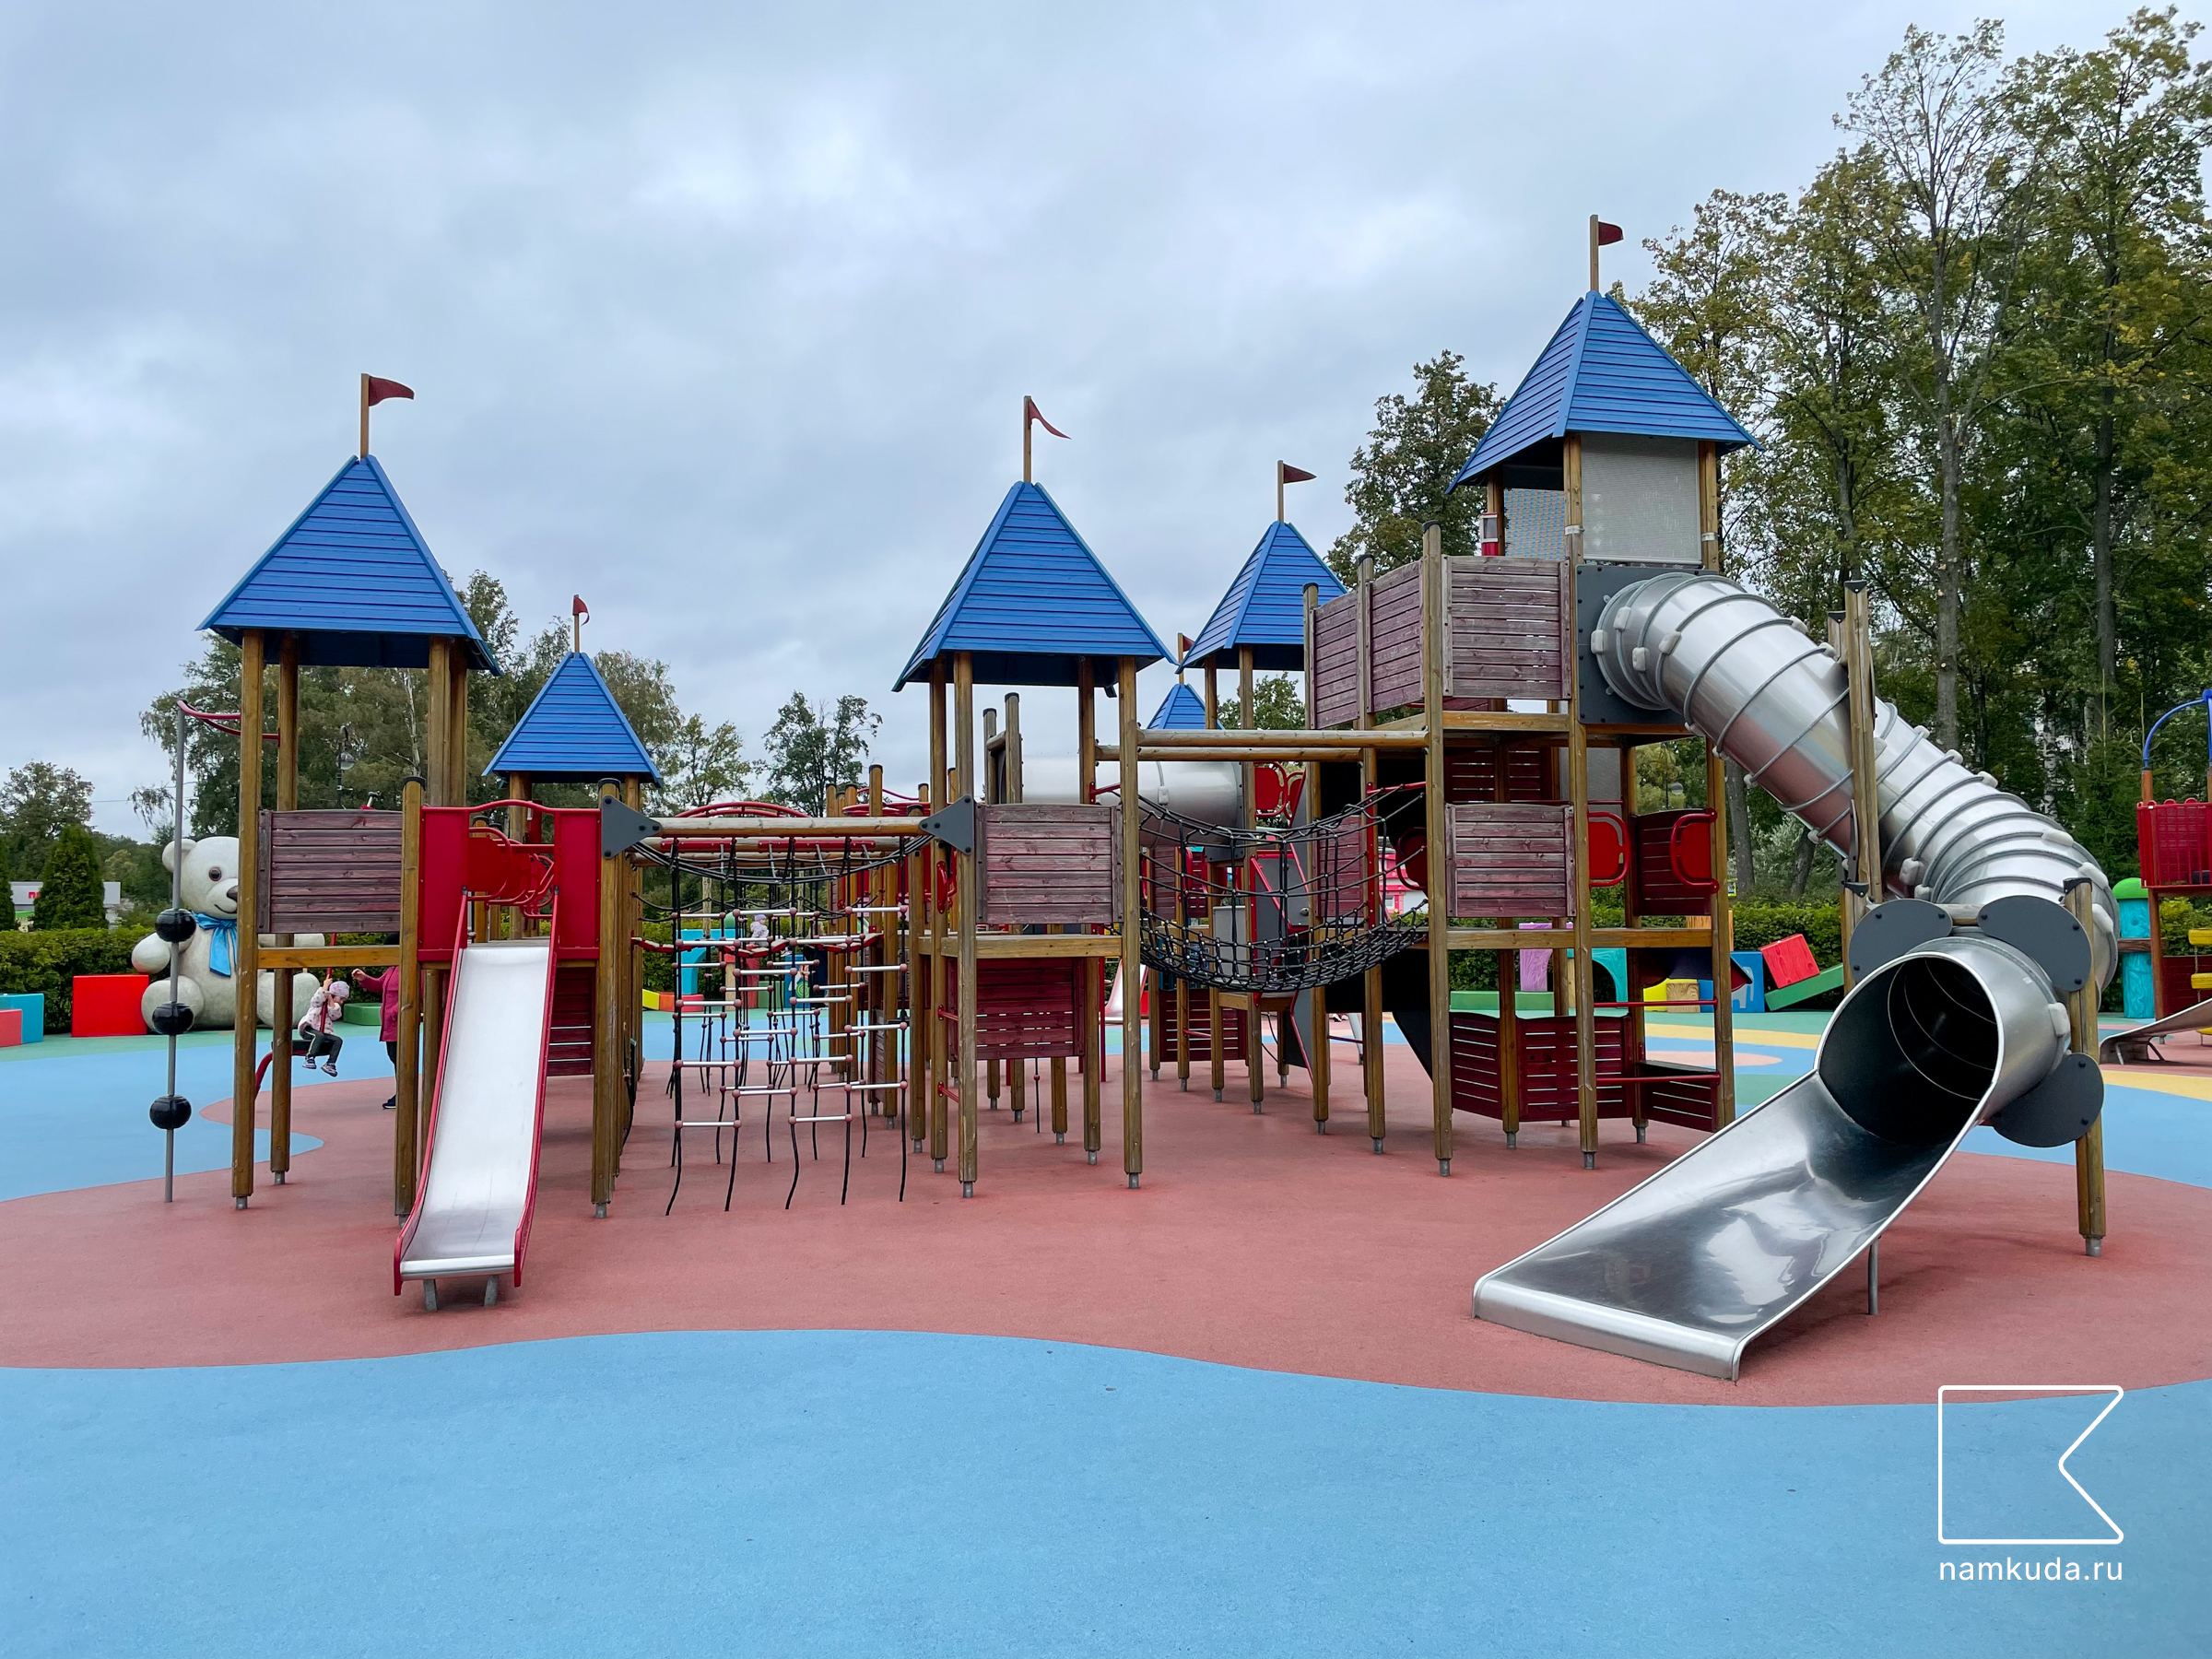 Игровая площадка — в парке аттракционов Диво остров в СПб 🇷🇺 — Намкуда